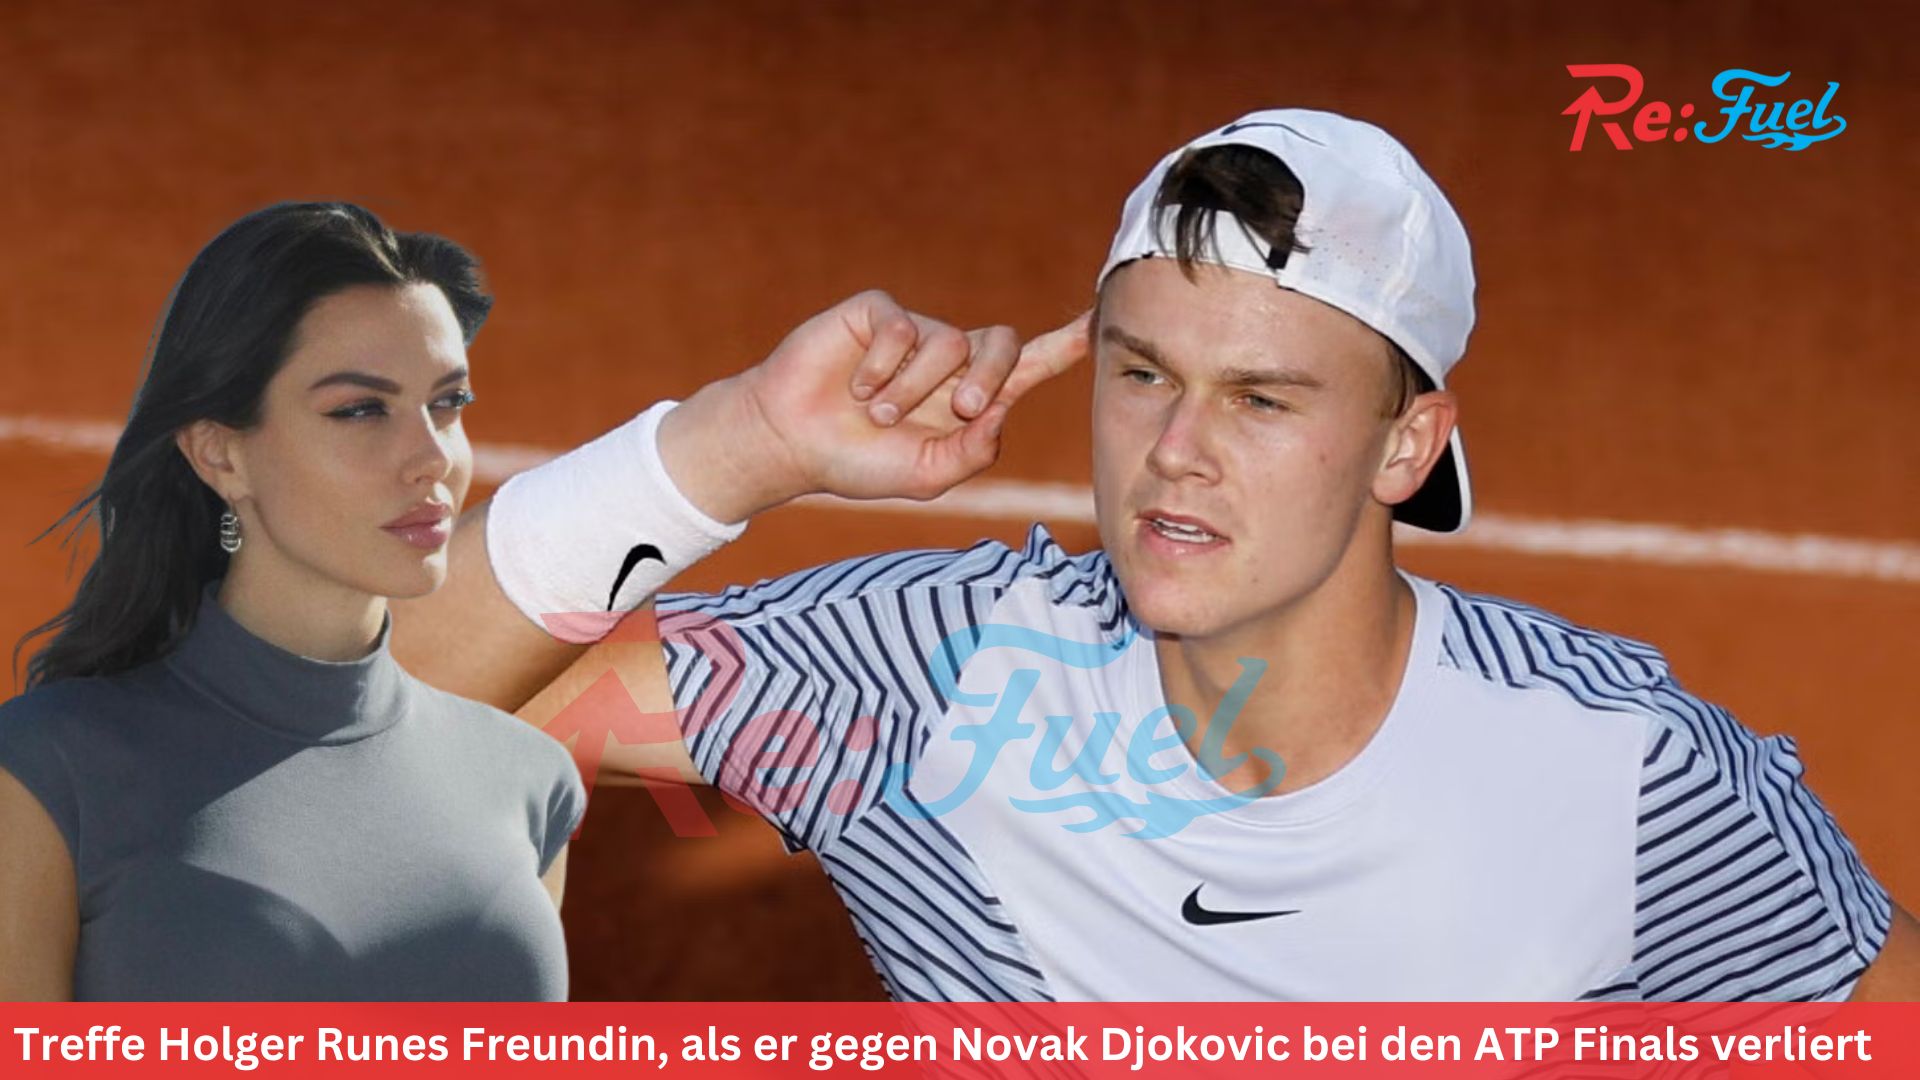 Treffe Holger Runes Freundin, als er gegen Novak Djokovic bei den ATP Finals verliert